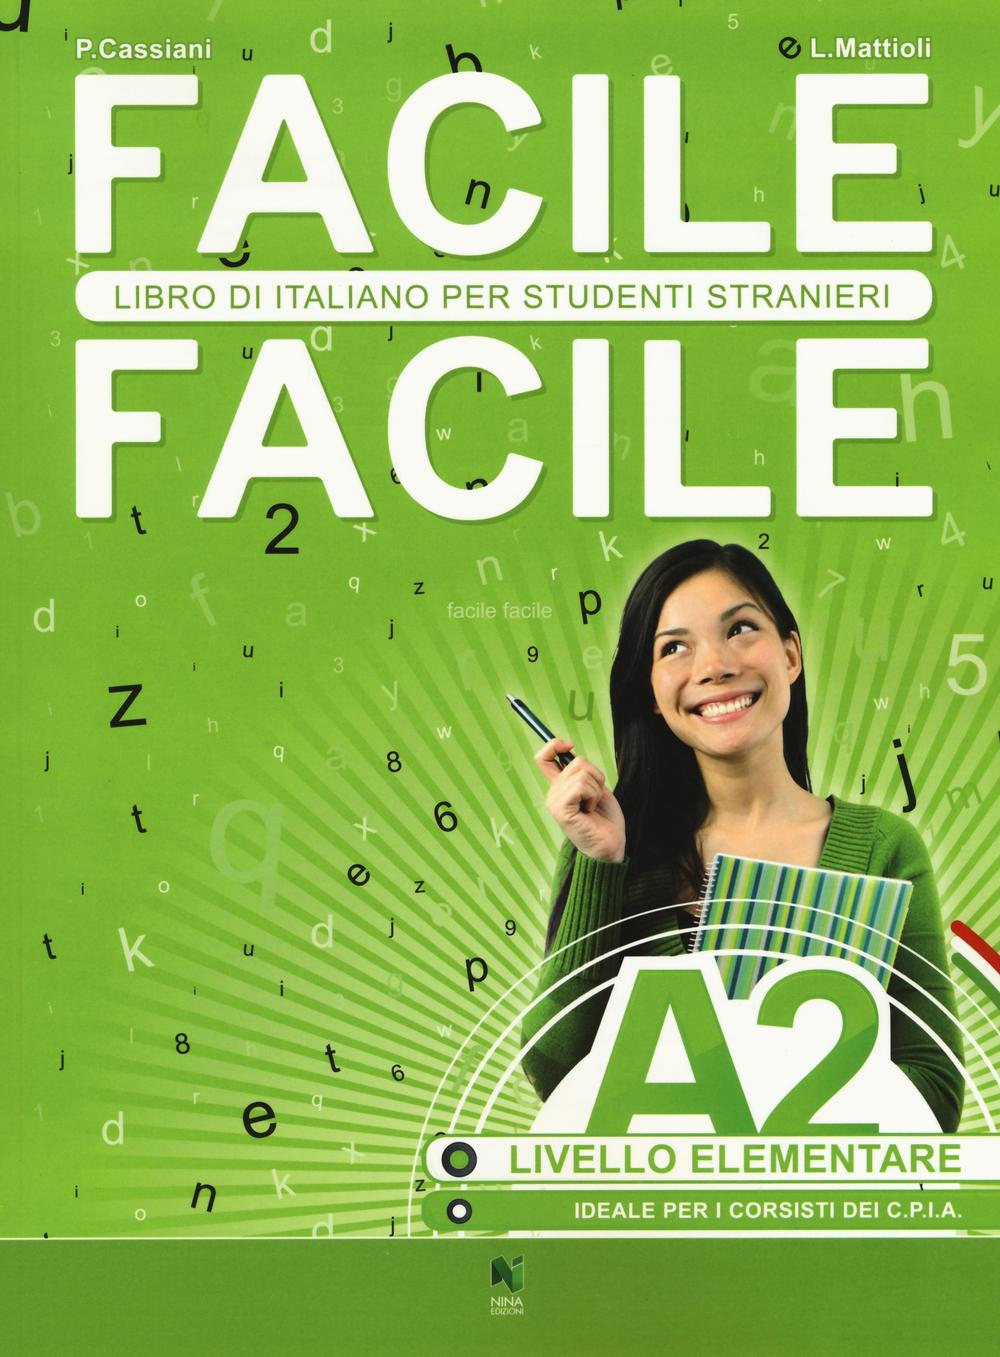 Книга Facile facile. Italiano per studenti stranieri. A2 livello elementare Paolo Cassiani